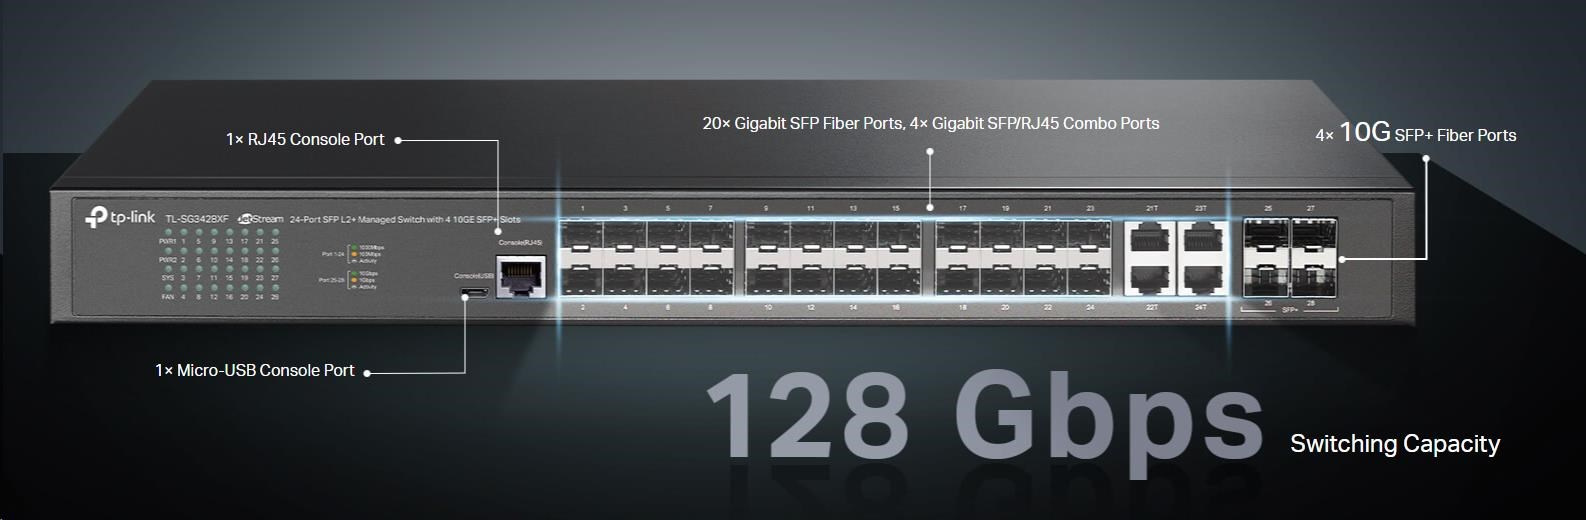 Vysokorýchlostný switch TP-Link JetStream TL-SG3428XF má bohatú portovú výbavu - 20x GbE SFP slot, 4x GbE SFP/RJ-45 Combo port, 4x 10G SFP + slot, 1x RJ-45 Console Port, 1x microUSB Console Port.